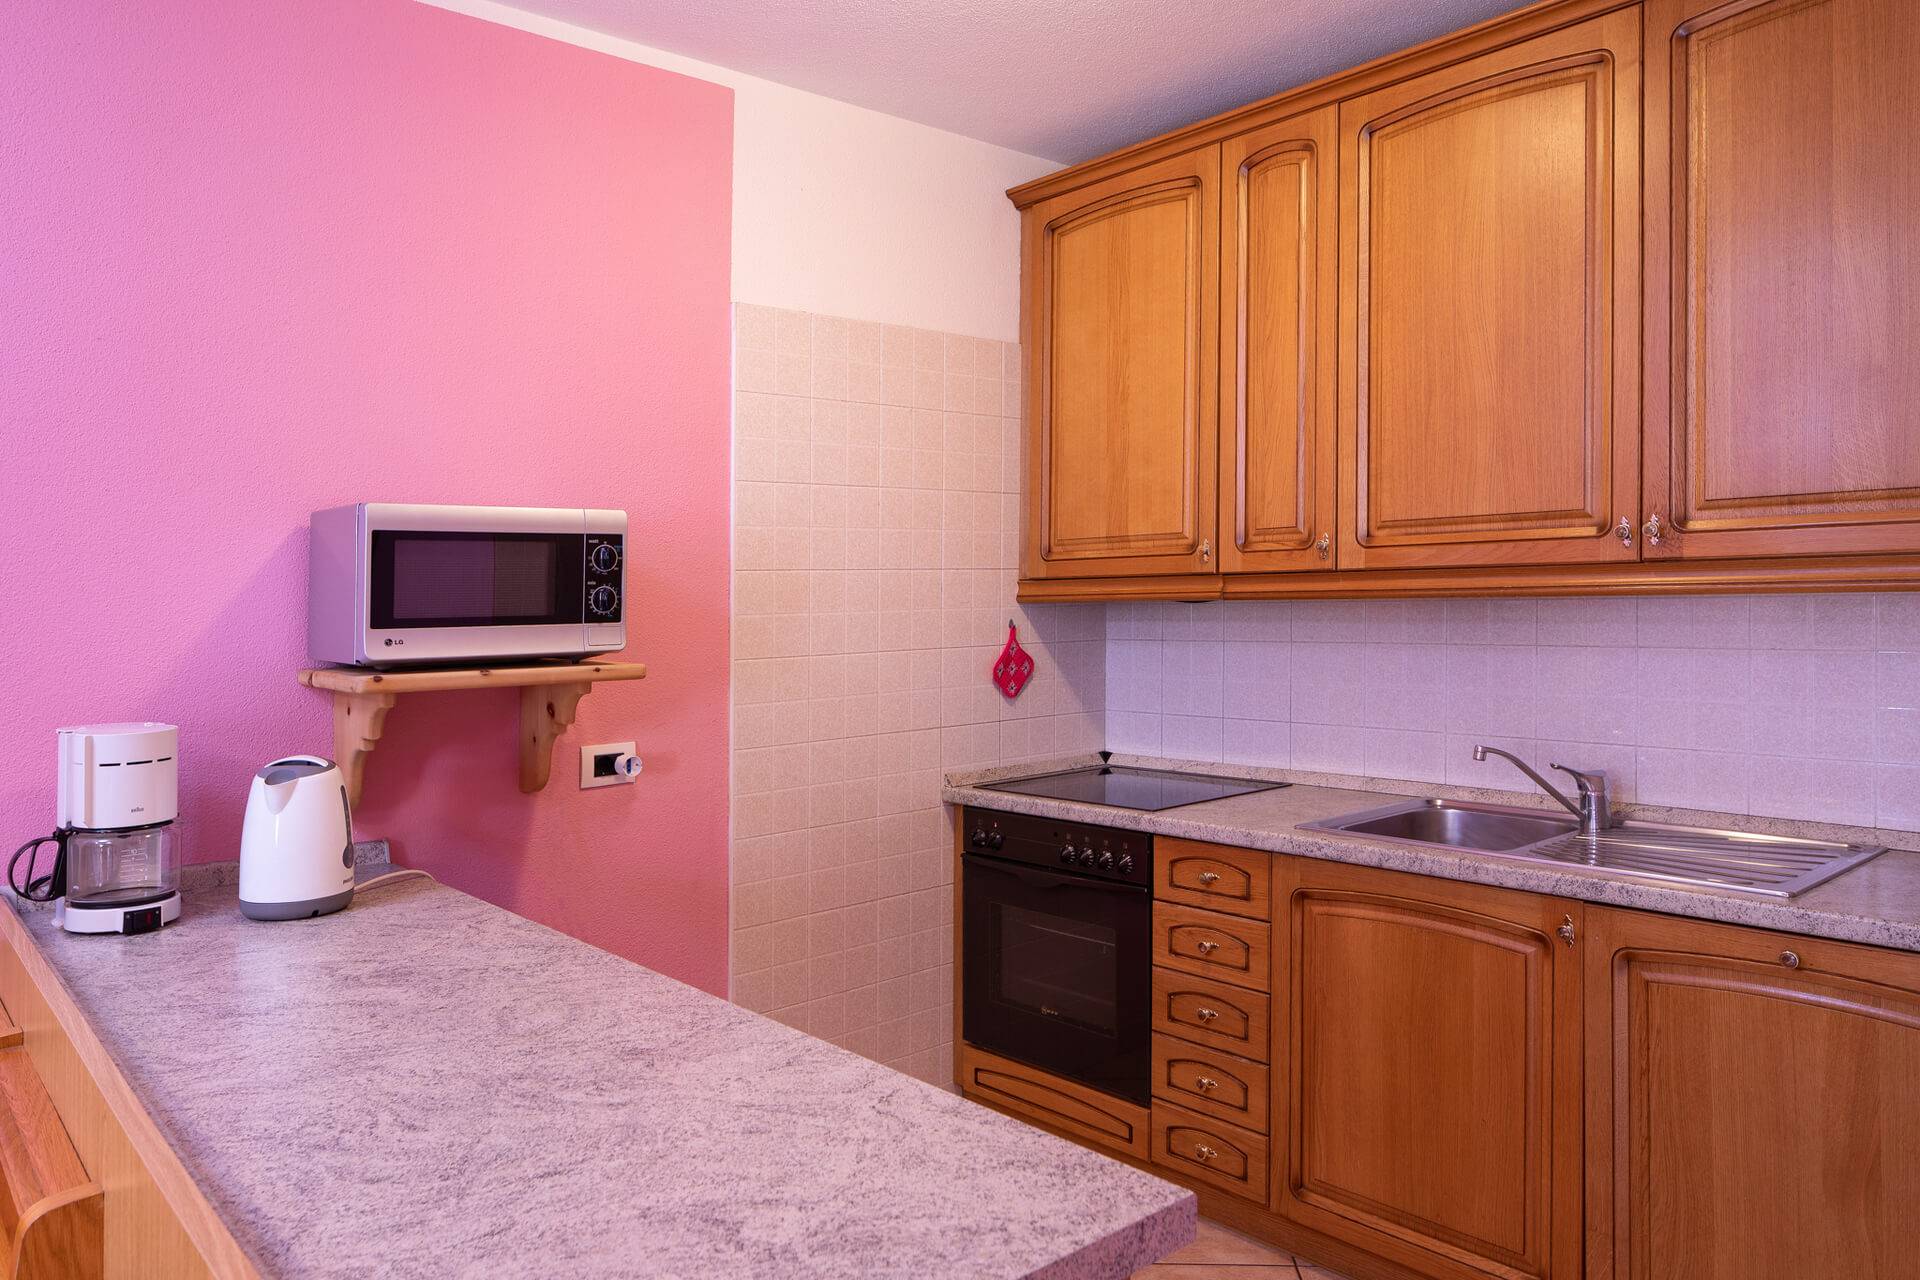 Appartamento a Livigno con salotto, cucina, bagno, balcone e camere da letto